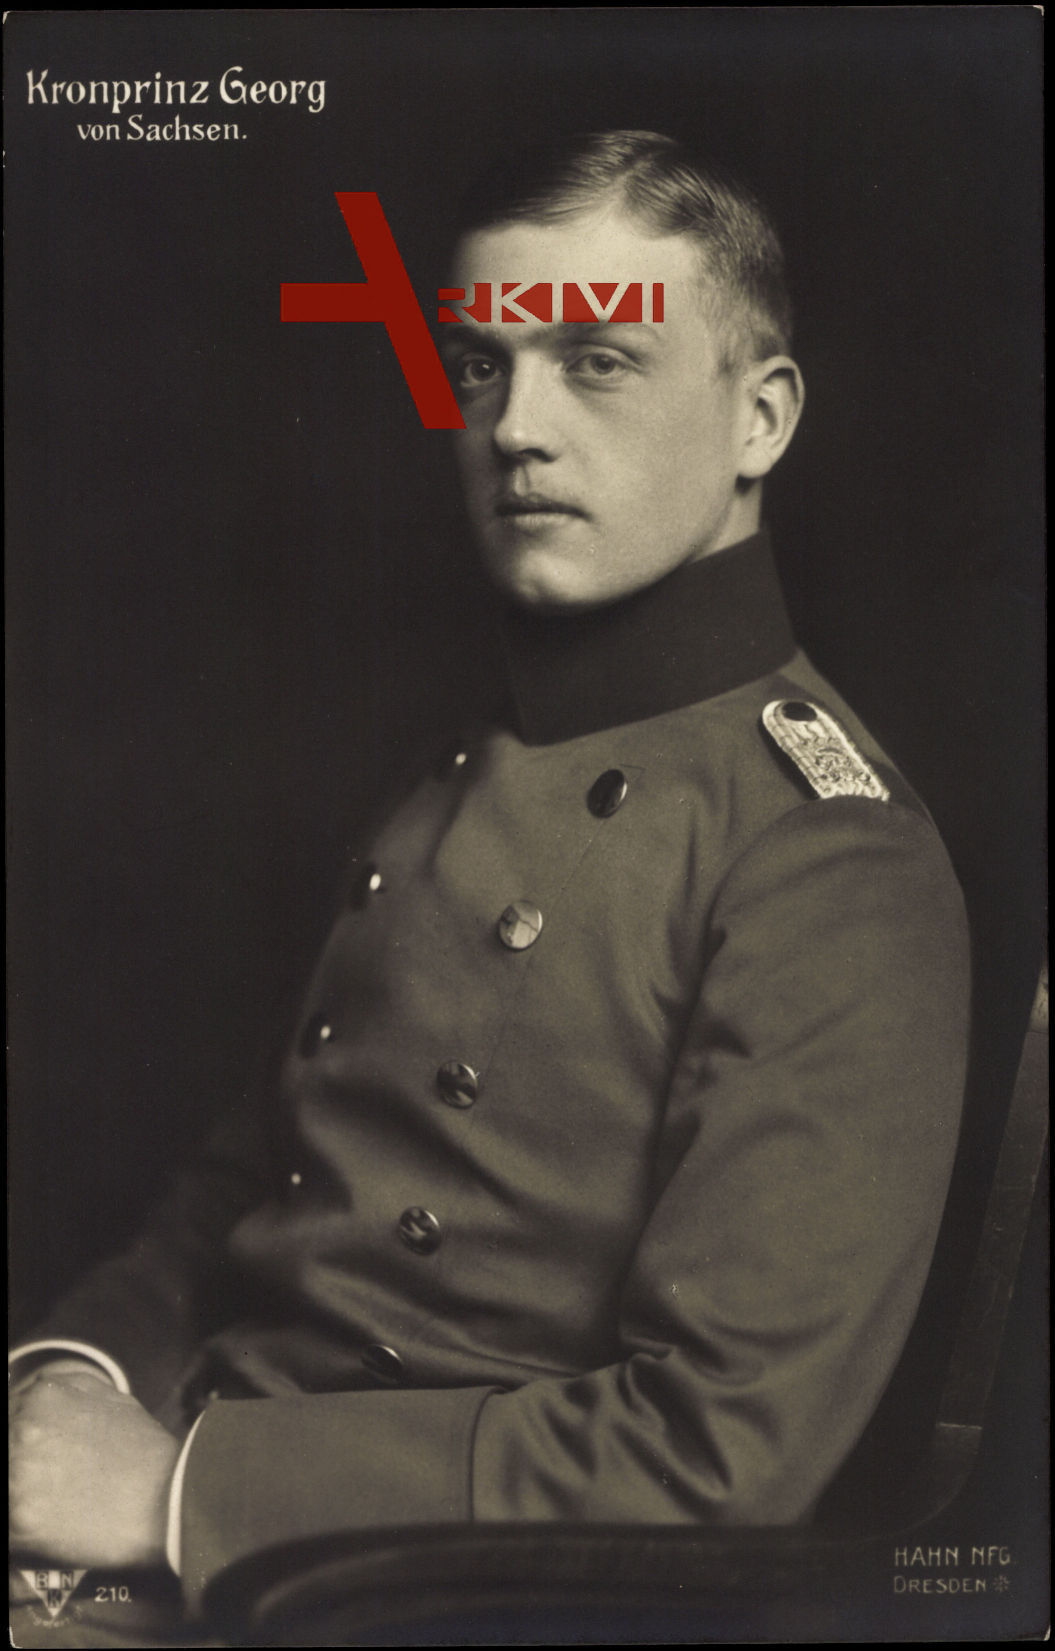 Kronprinz Georg von Sachsen, Sitzportrait, Schulterklappe, Uniform